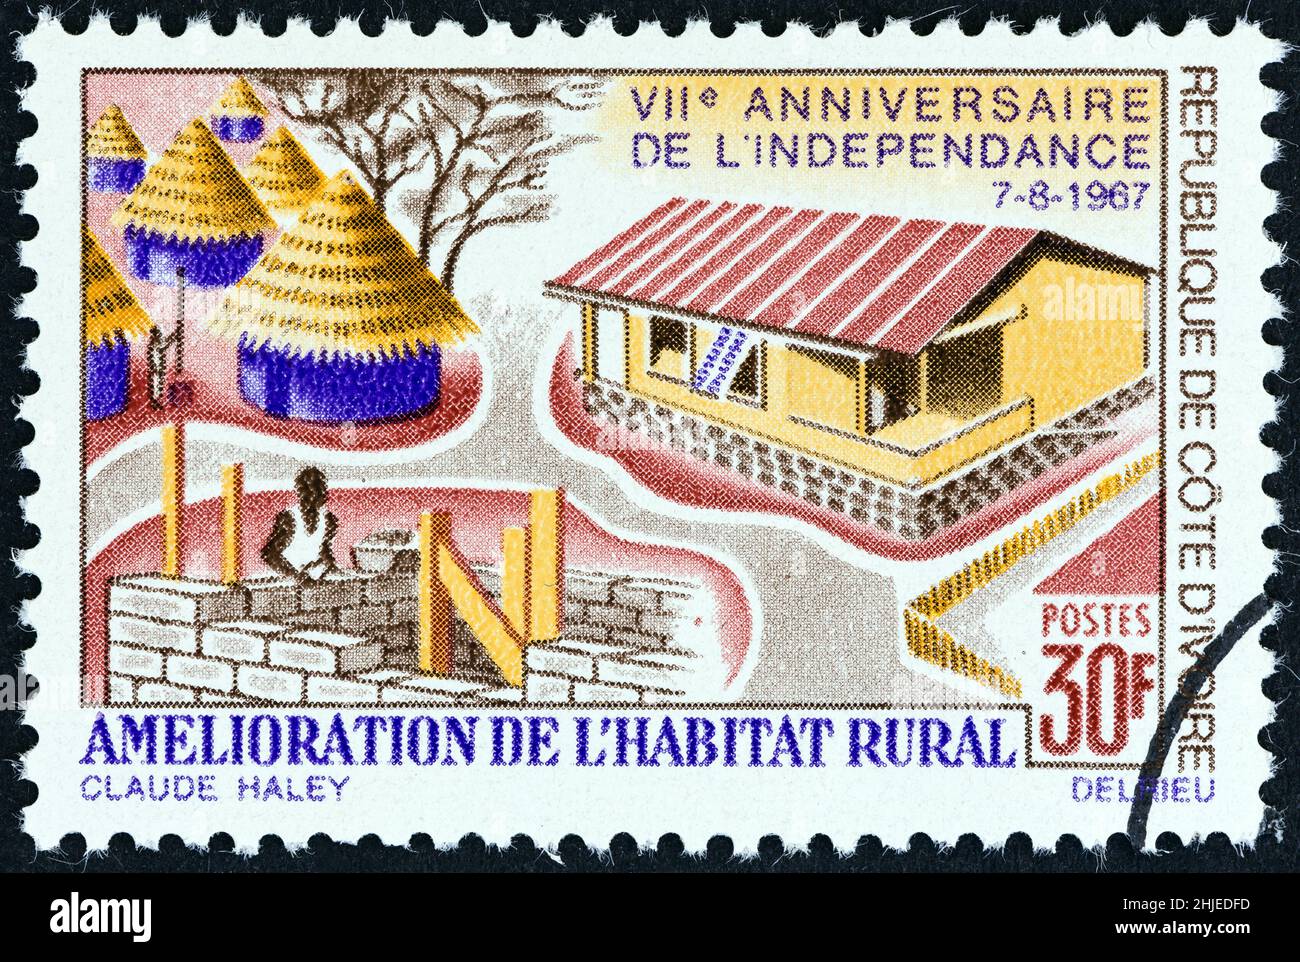 CÔTE D'IVOIRE - VERS 1967 : un timbre imprimé en Côte d'Ivoire émis pour le 7th anniversaire de l'indépendance montre l'amélioration du logement rural, vers 1967. Banque D'Images